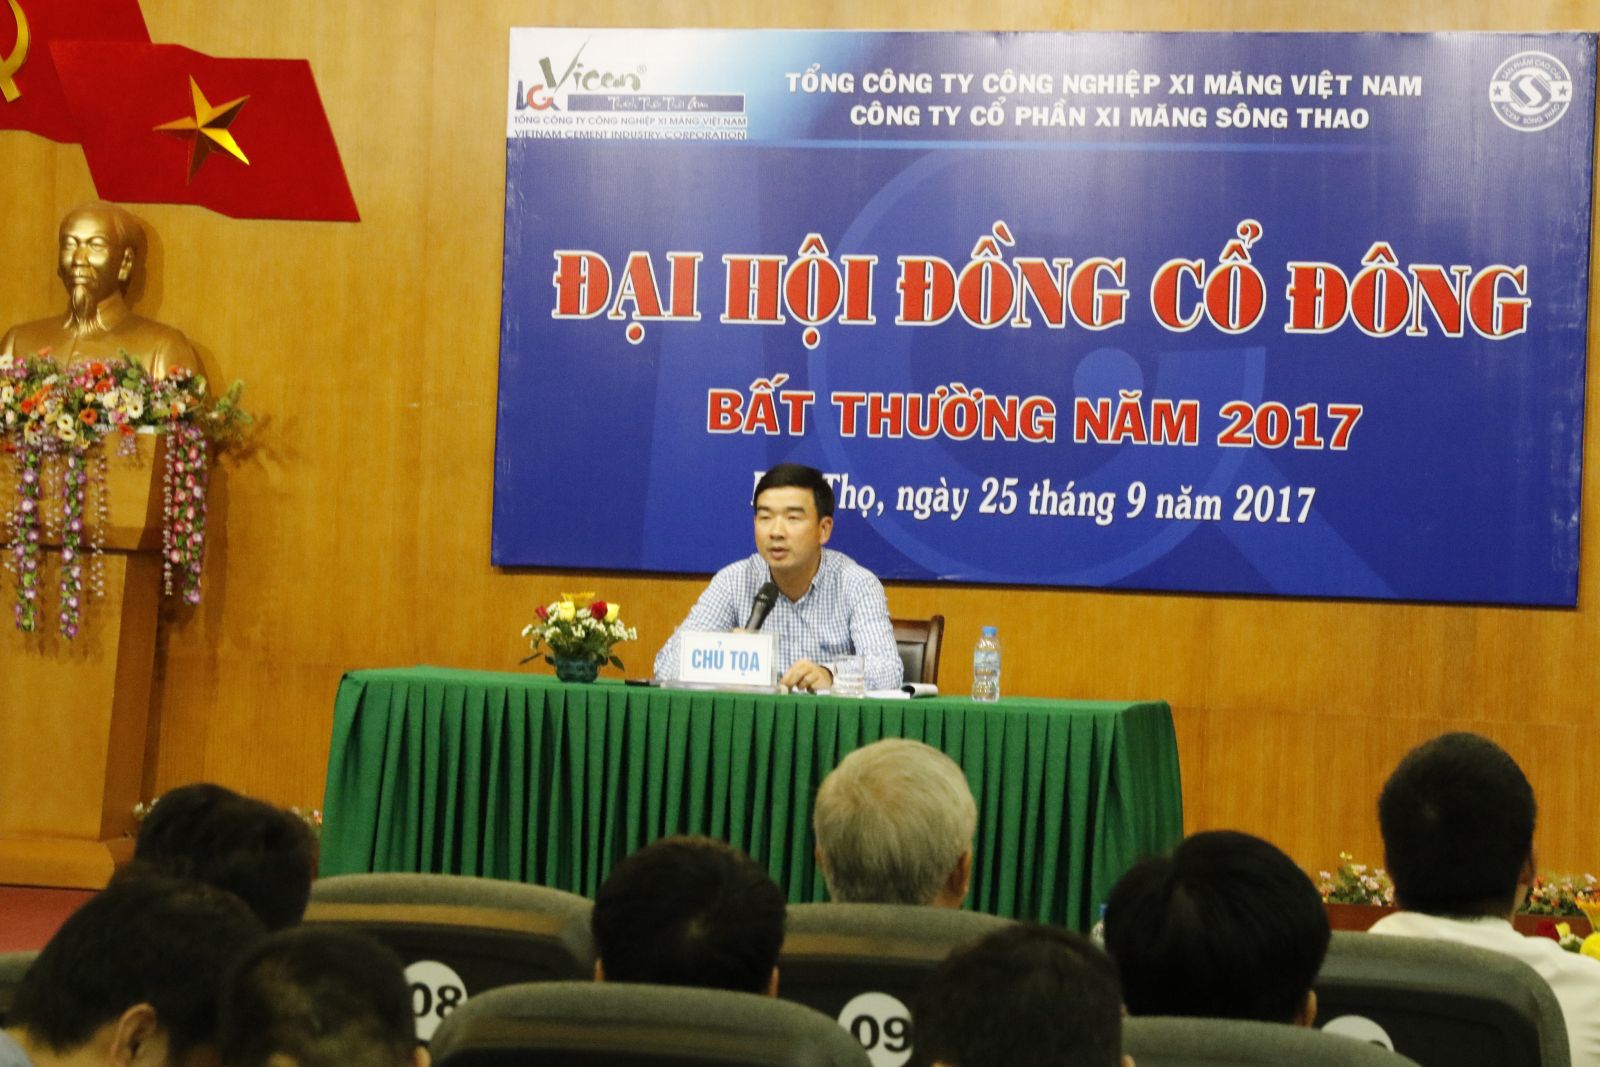 Công ty cổ phần xi măng Sông Thao tổ chức thành công Đại hội đồng cổ đông bất thường năm 2017